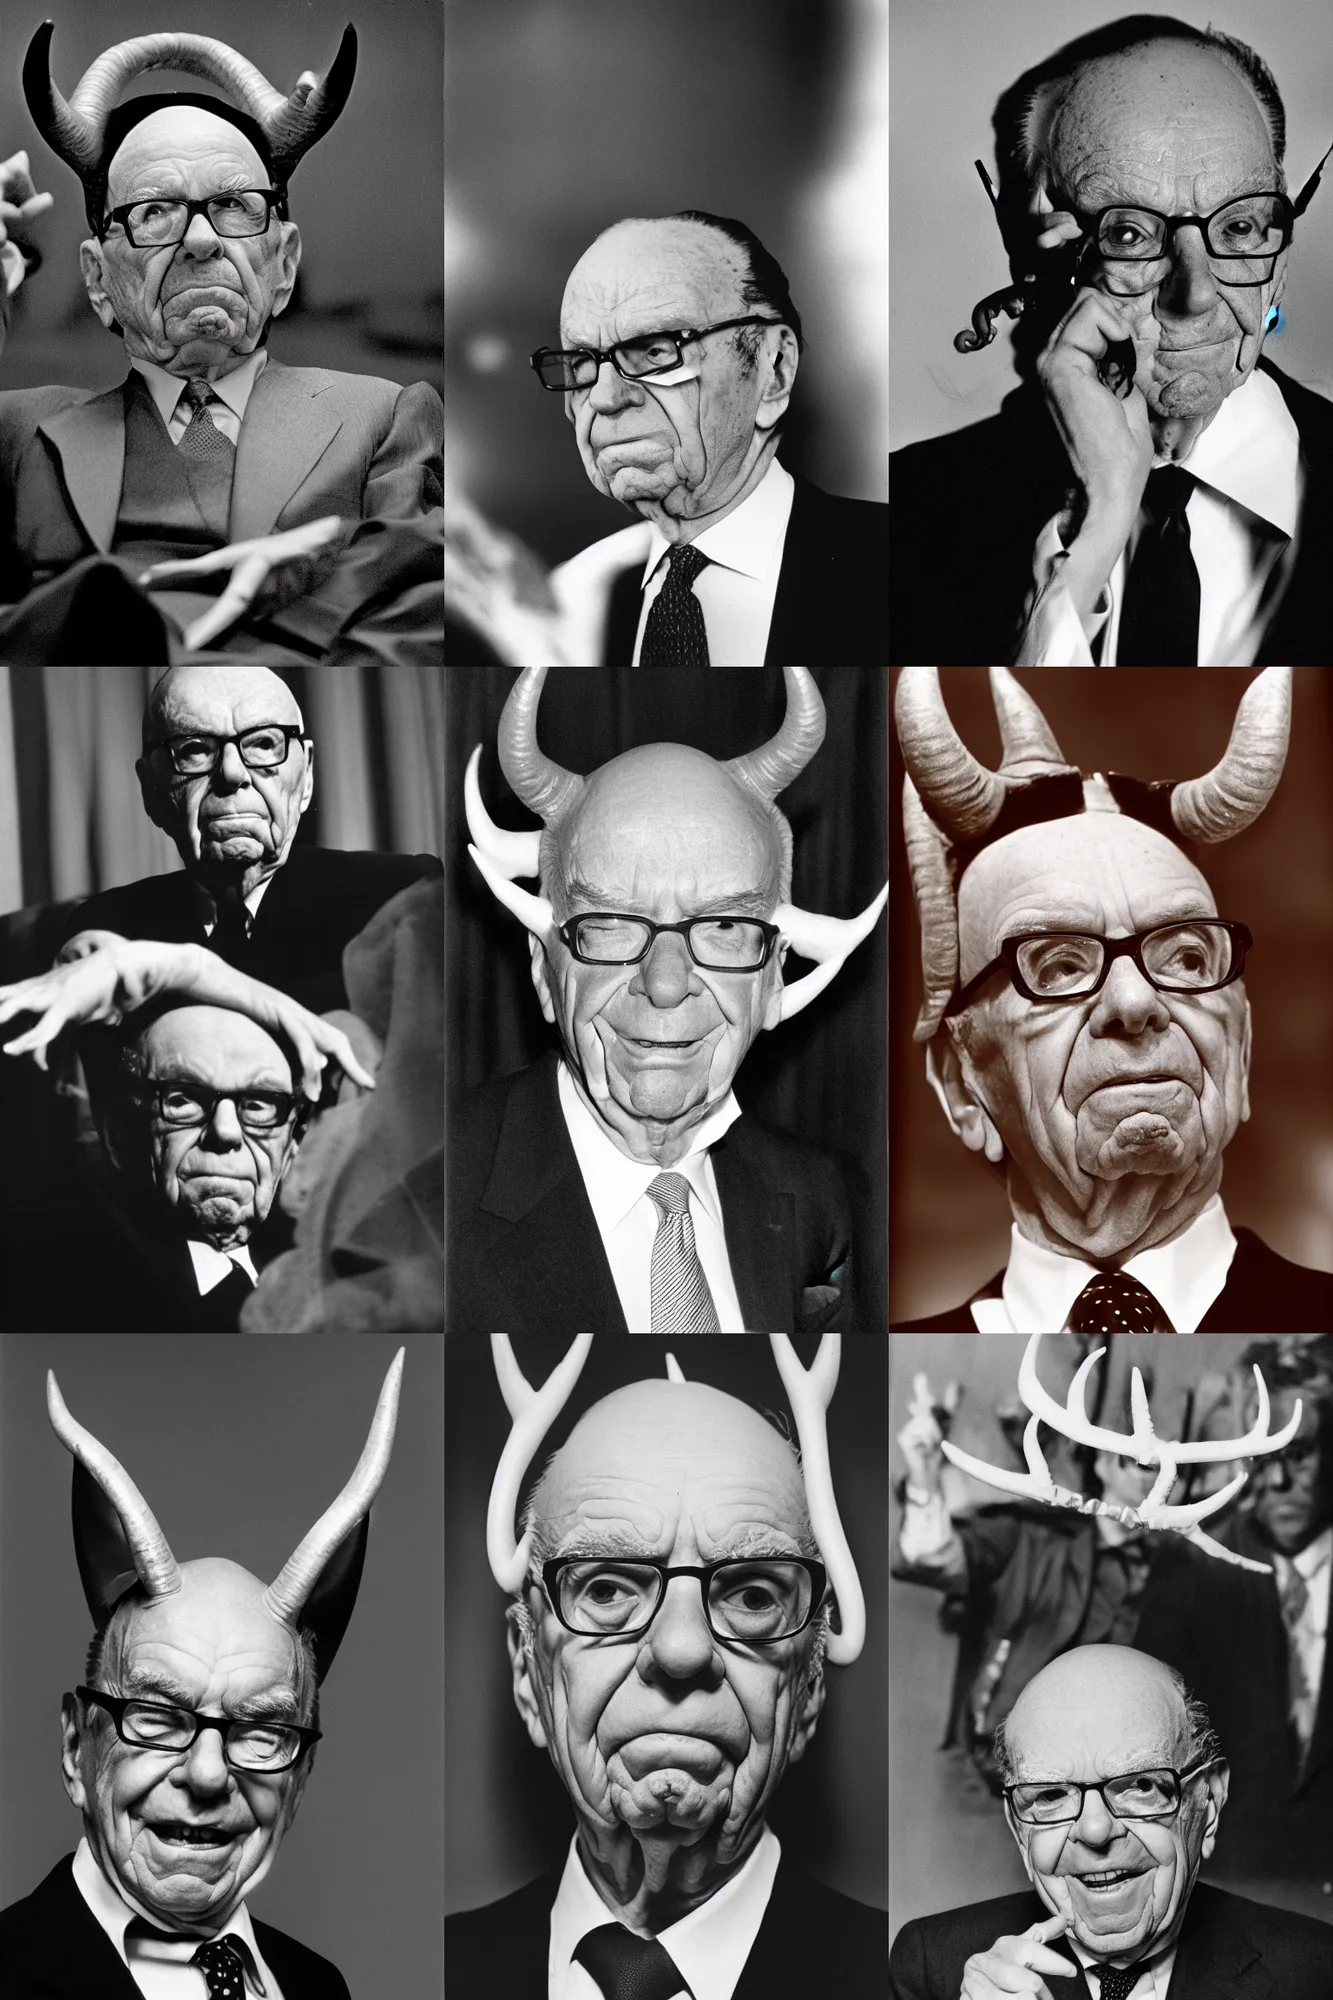 Prompt: Rupert Murdoch as Satan with horns, portrait photograph, film grain